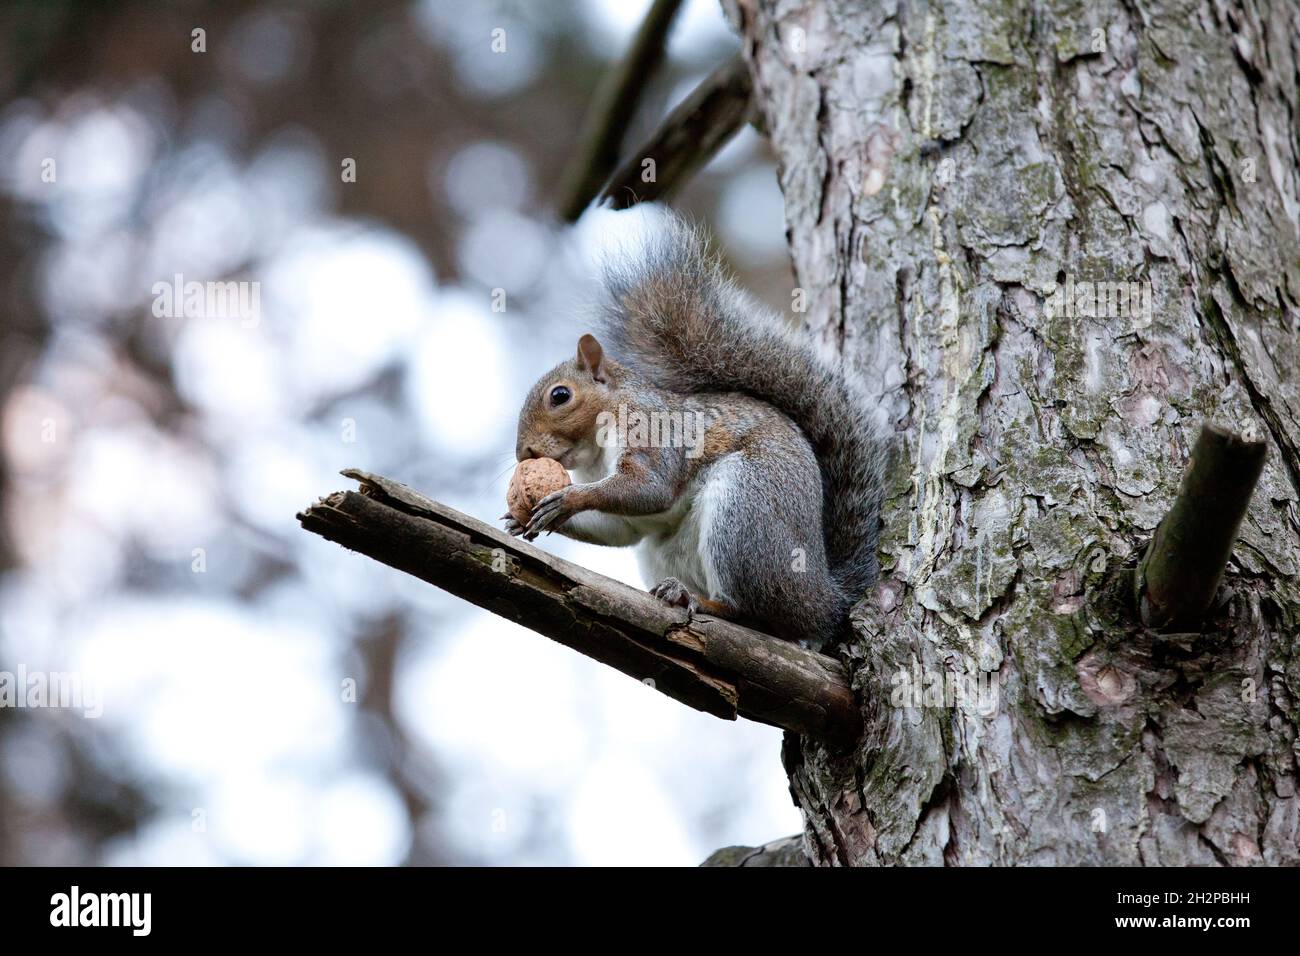 vita da scoiattolo Stock Photo